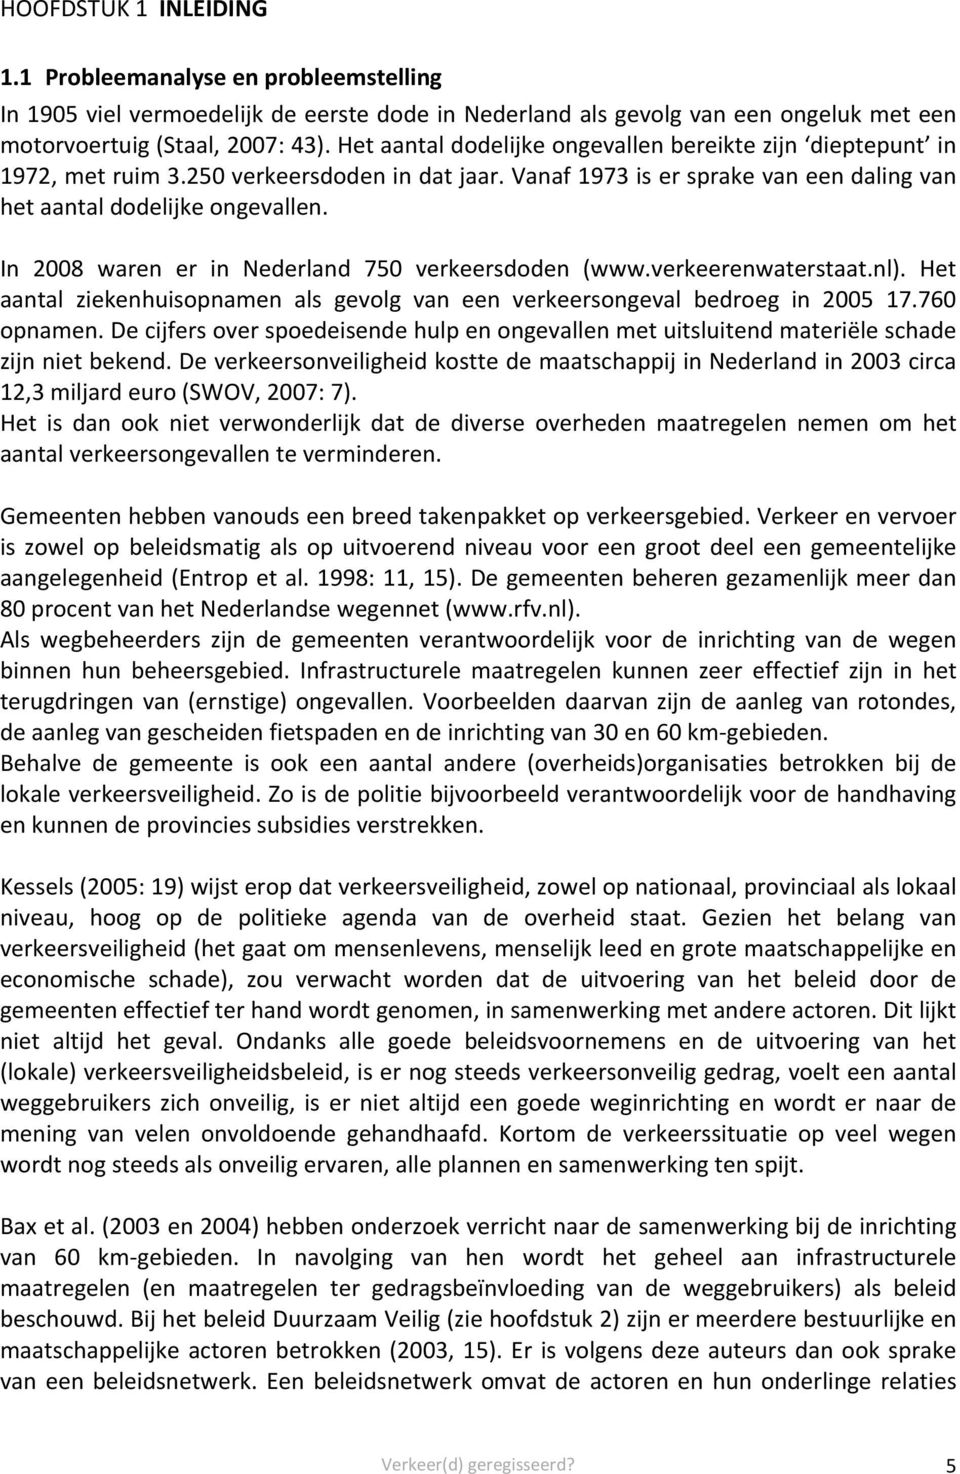 In 2008 waren er in Nederland 750 verkeersdoden (www.verkeerenwaterstaat.nl). Het aantal ziekenhuisopnamen als gevolg van een verkeersongeval bedroeg in 2005 17.760 opnamen.